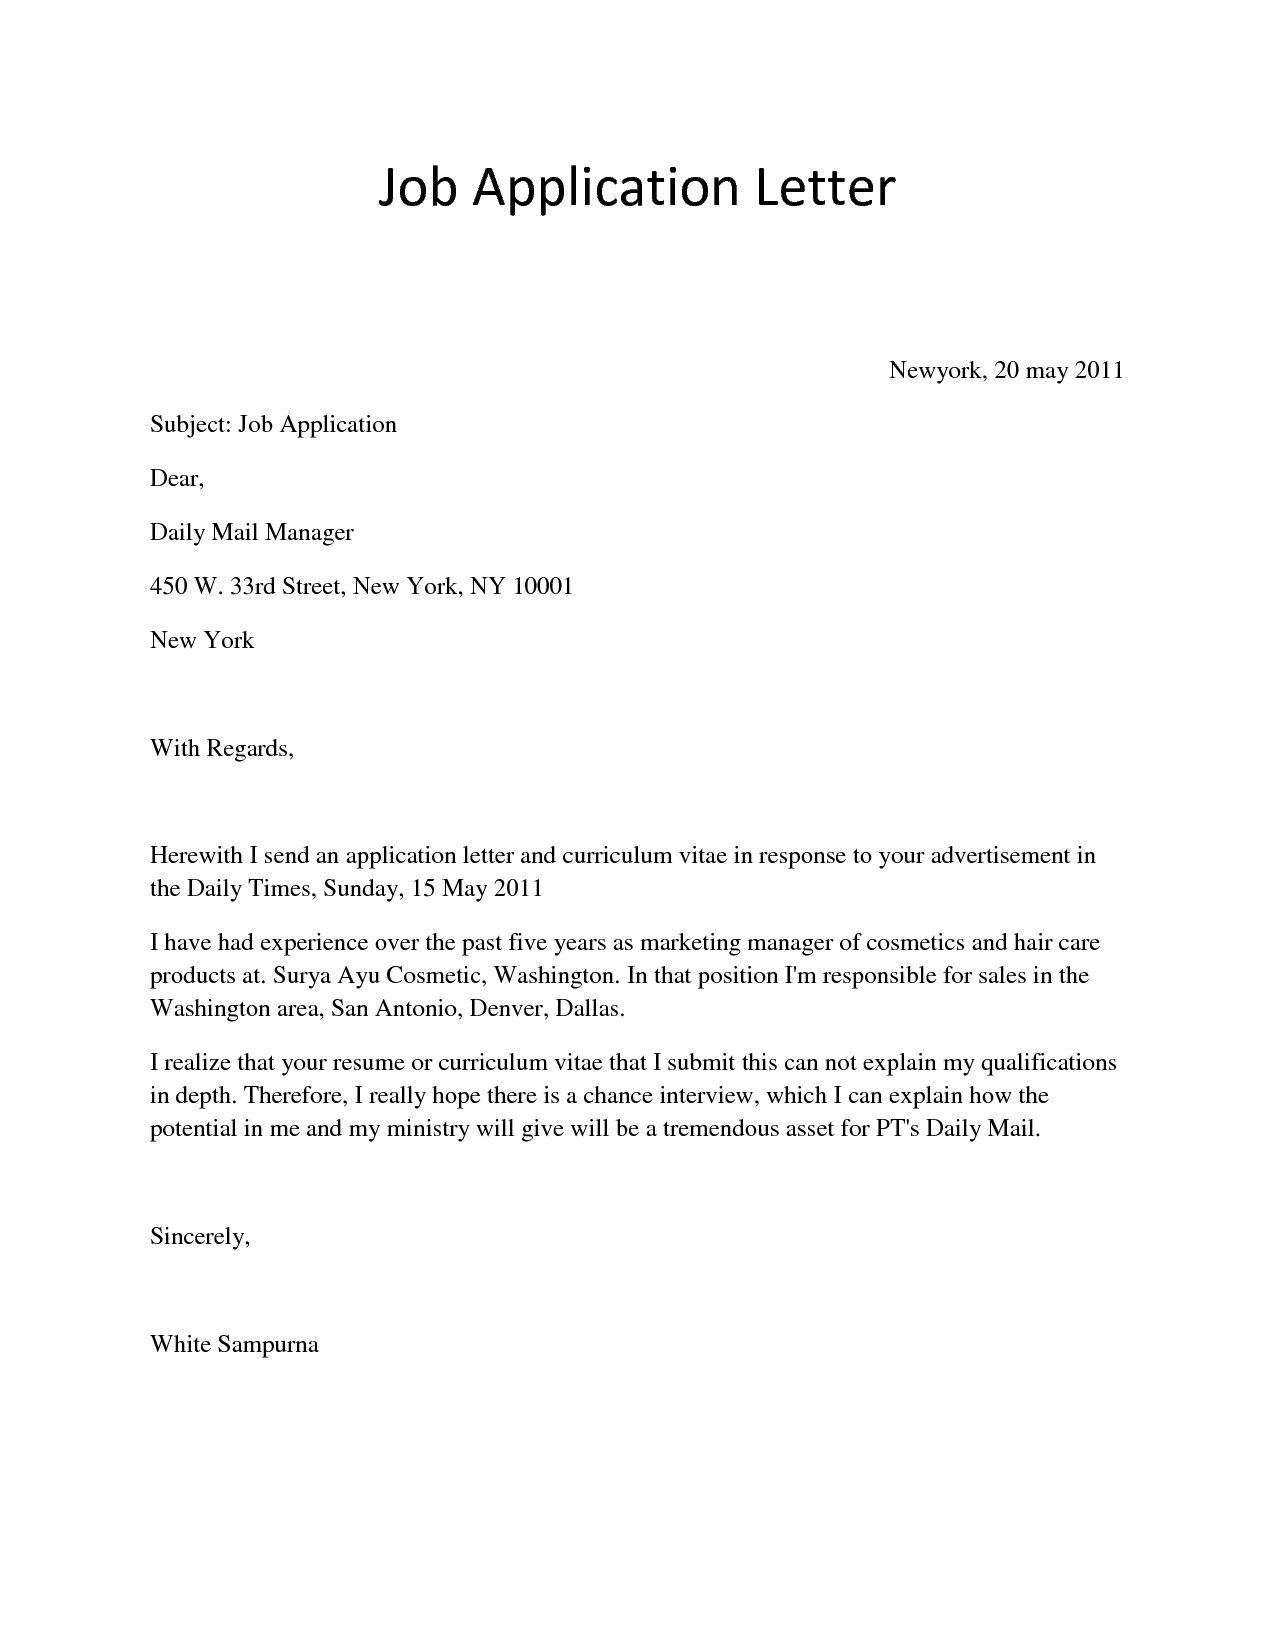 Sample Application Letter For Job Apply